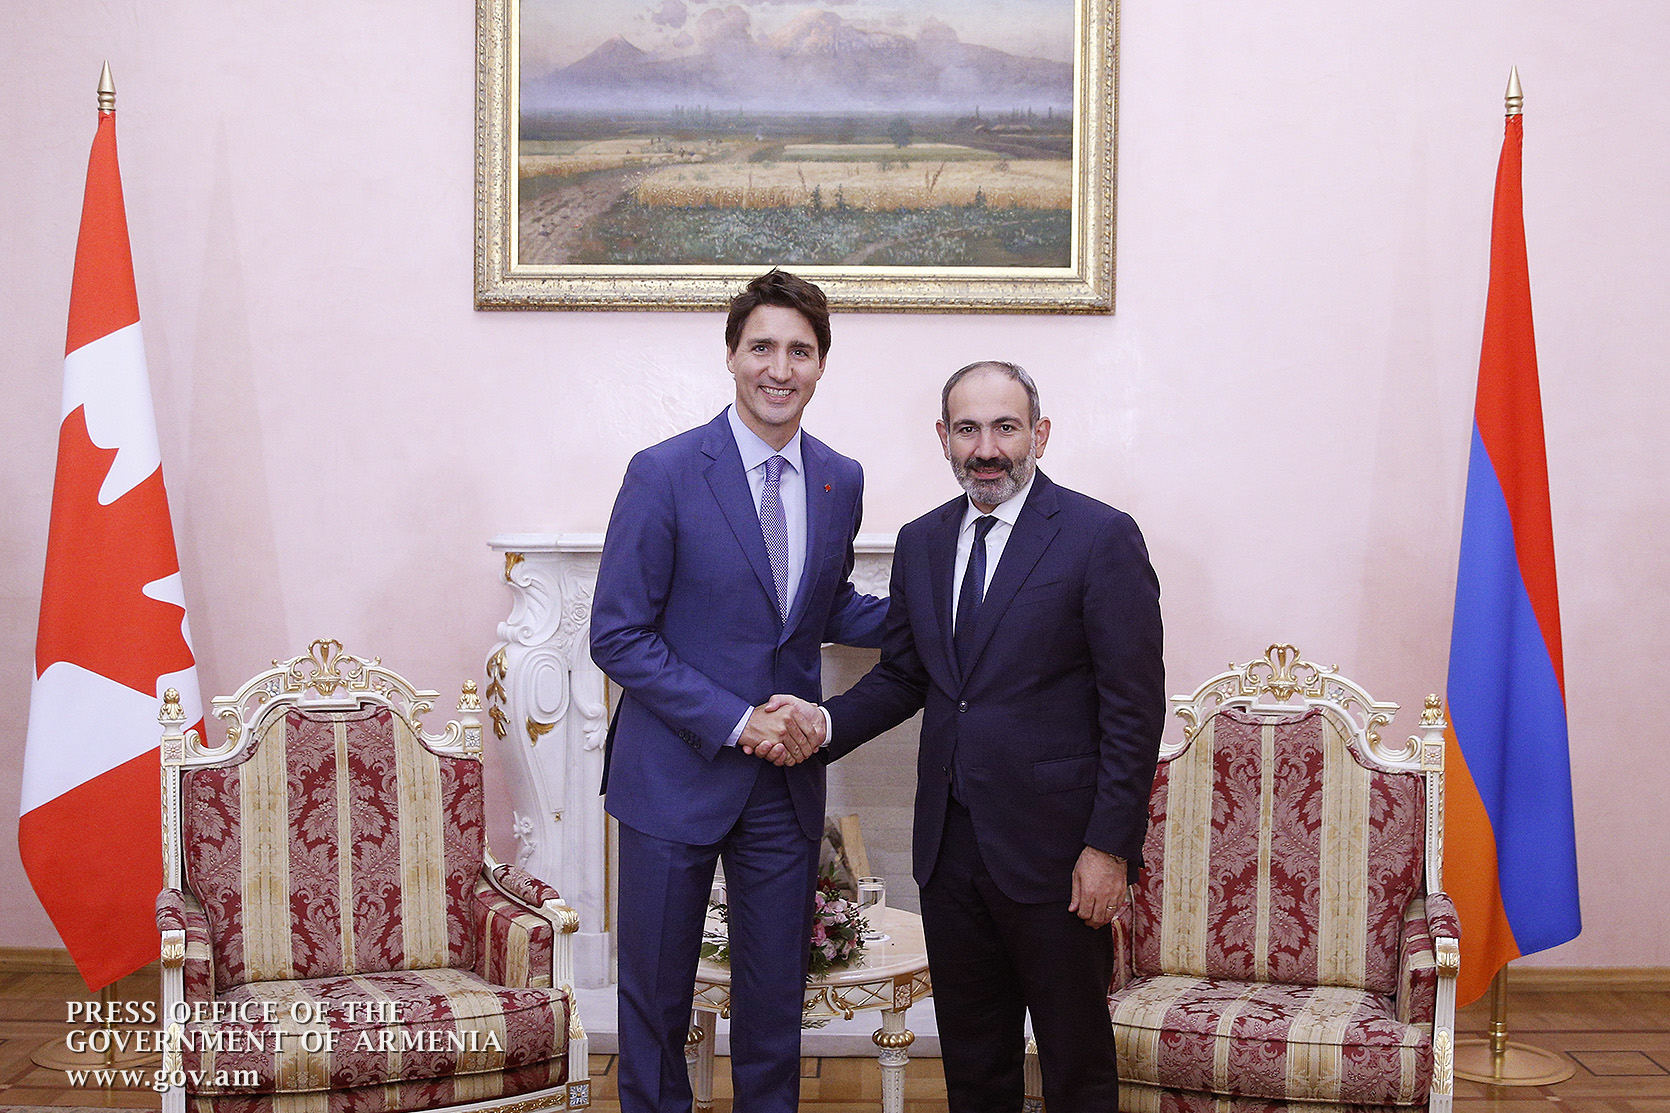 Канада готова помочь Армении в экономическом развитии, привлечении инвестиций - Трюдо